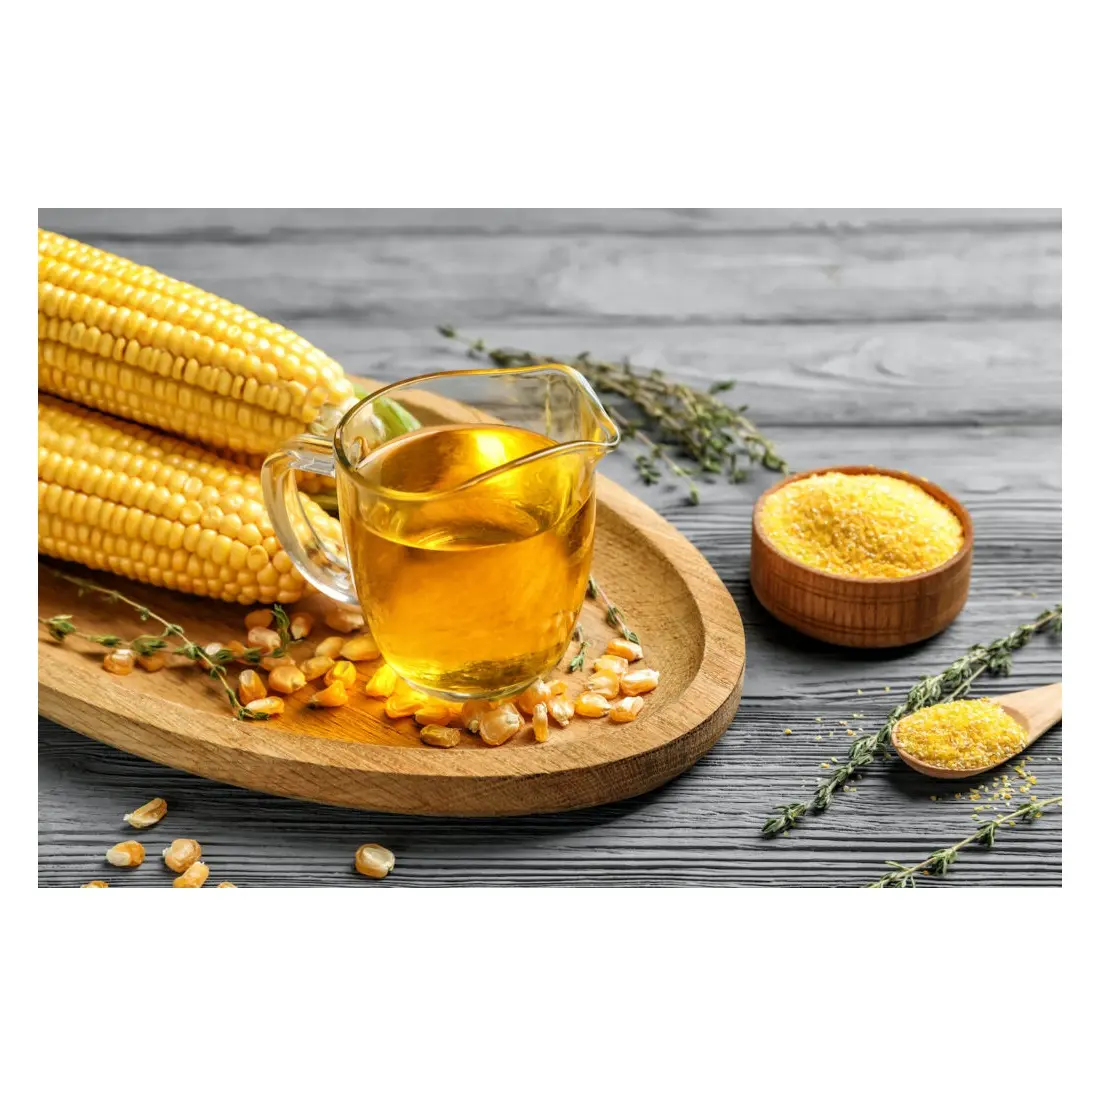 Scorte sfuse disponibili di olio di mais raffinato/olio di mais grezzo/olio di mais da cucina a prezzi all'ingrosso